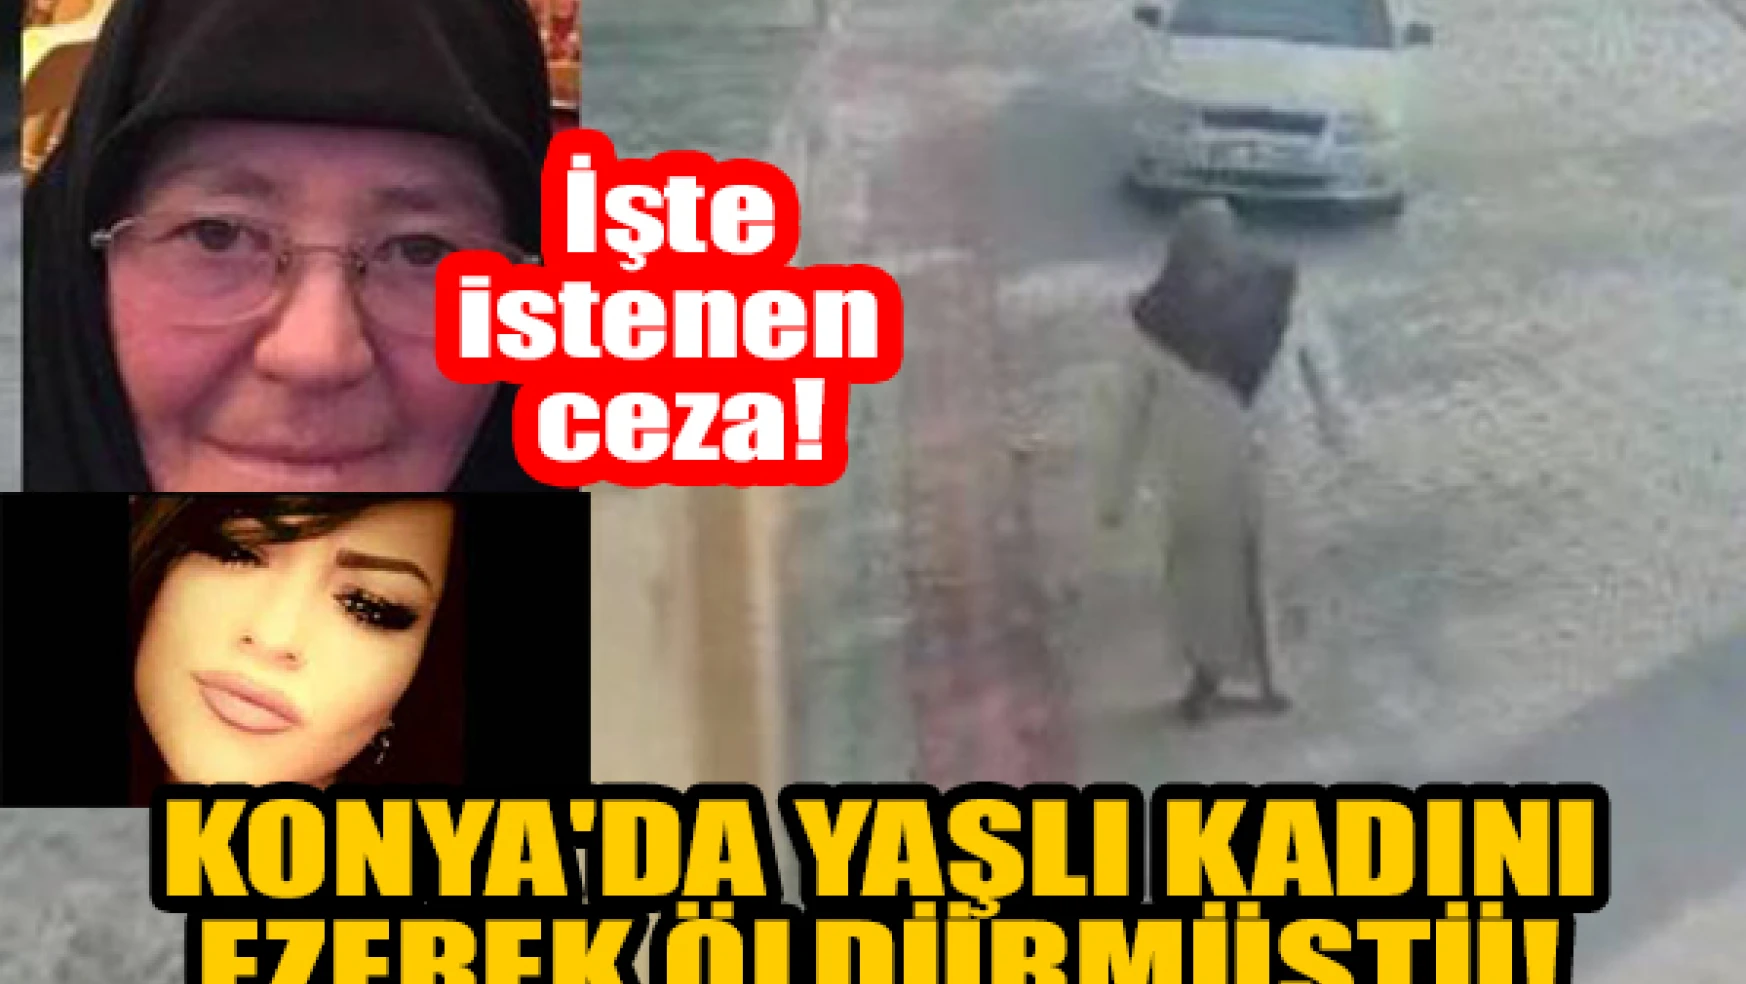  Konya'da yaşlı kadını ezerek öldürmüştü! İşte istenen ceza!